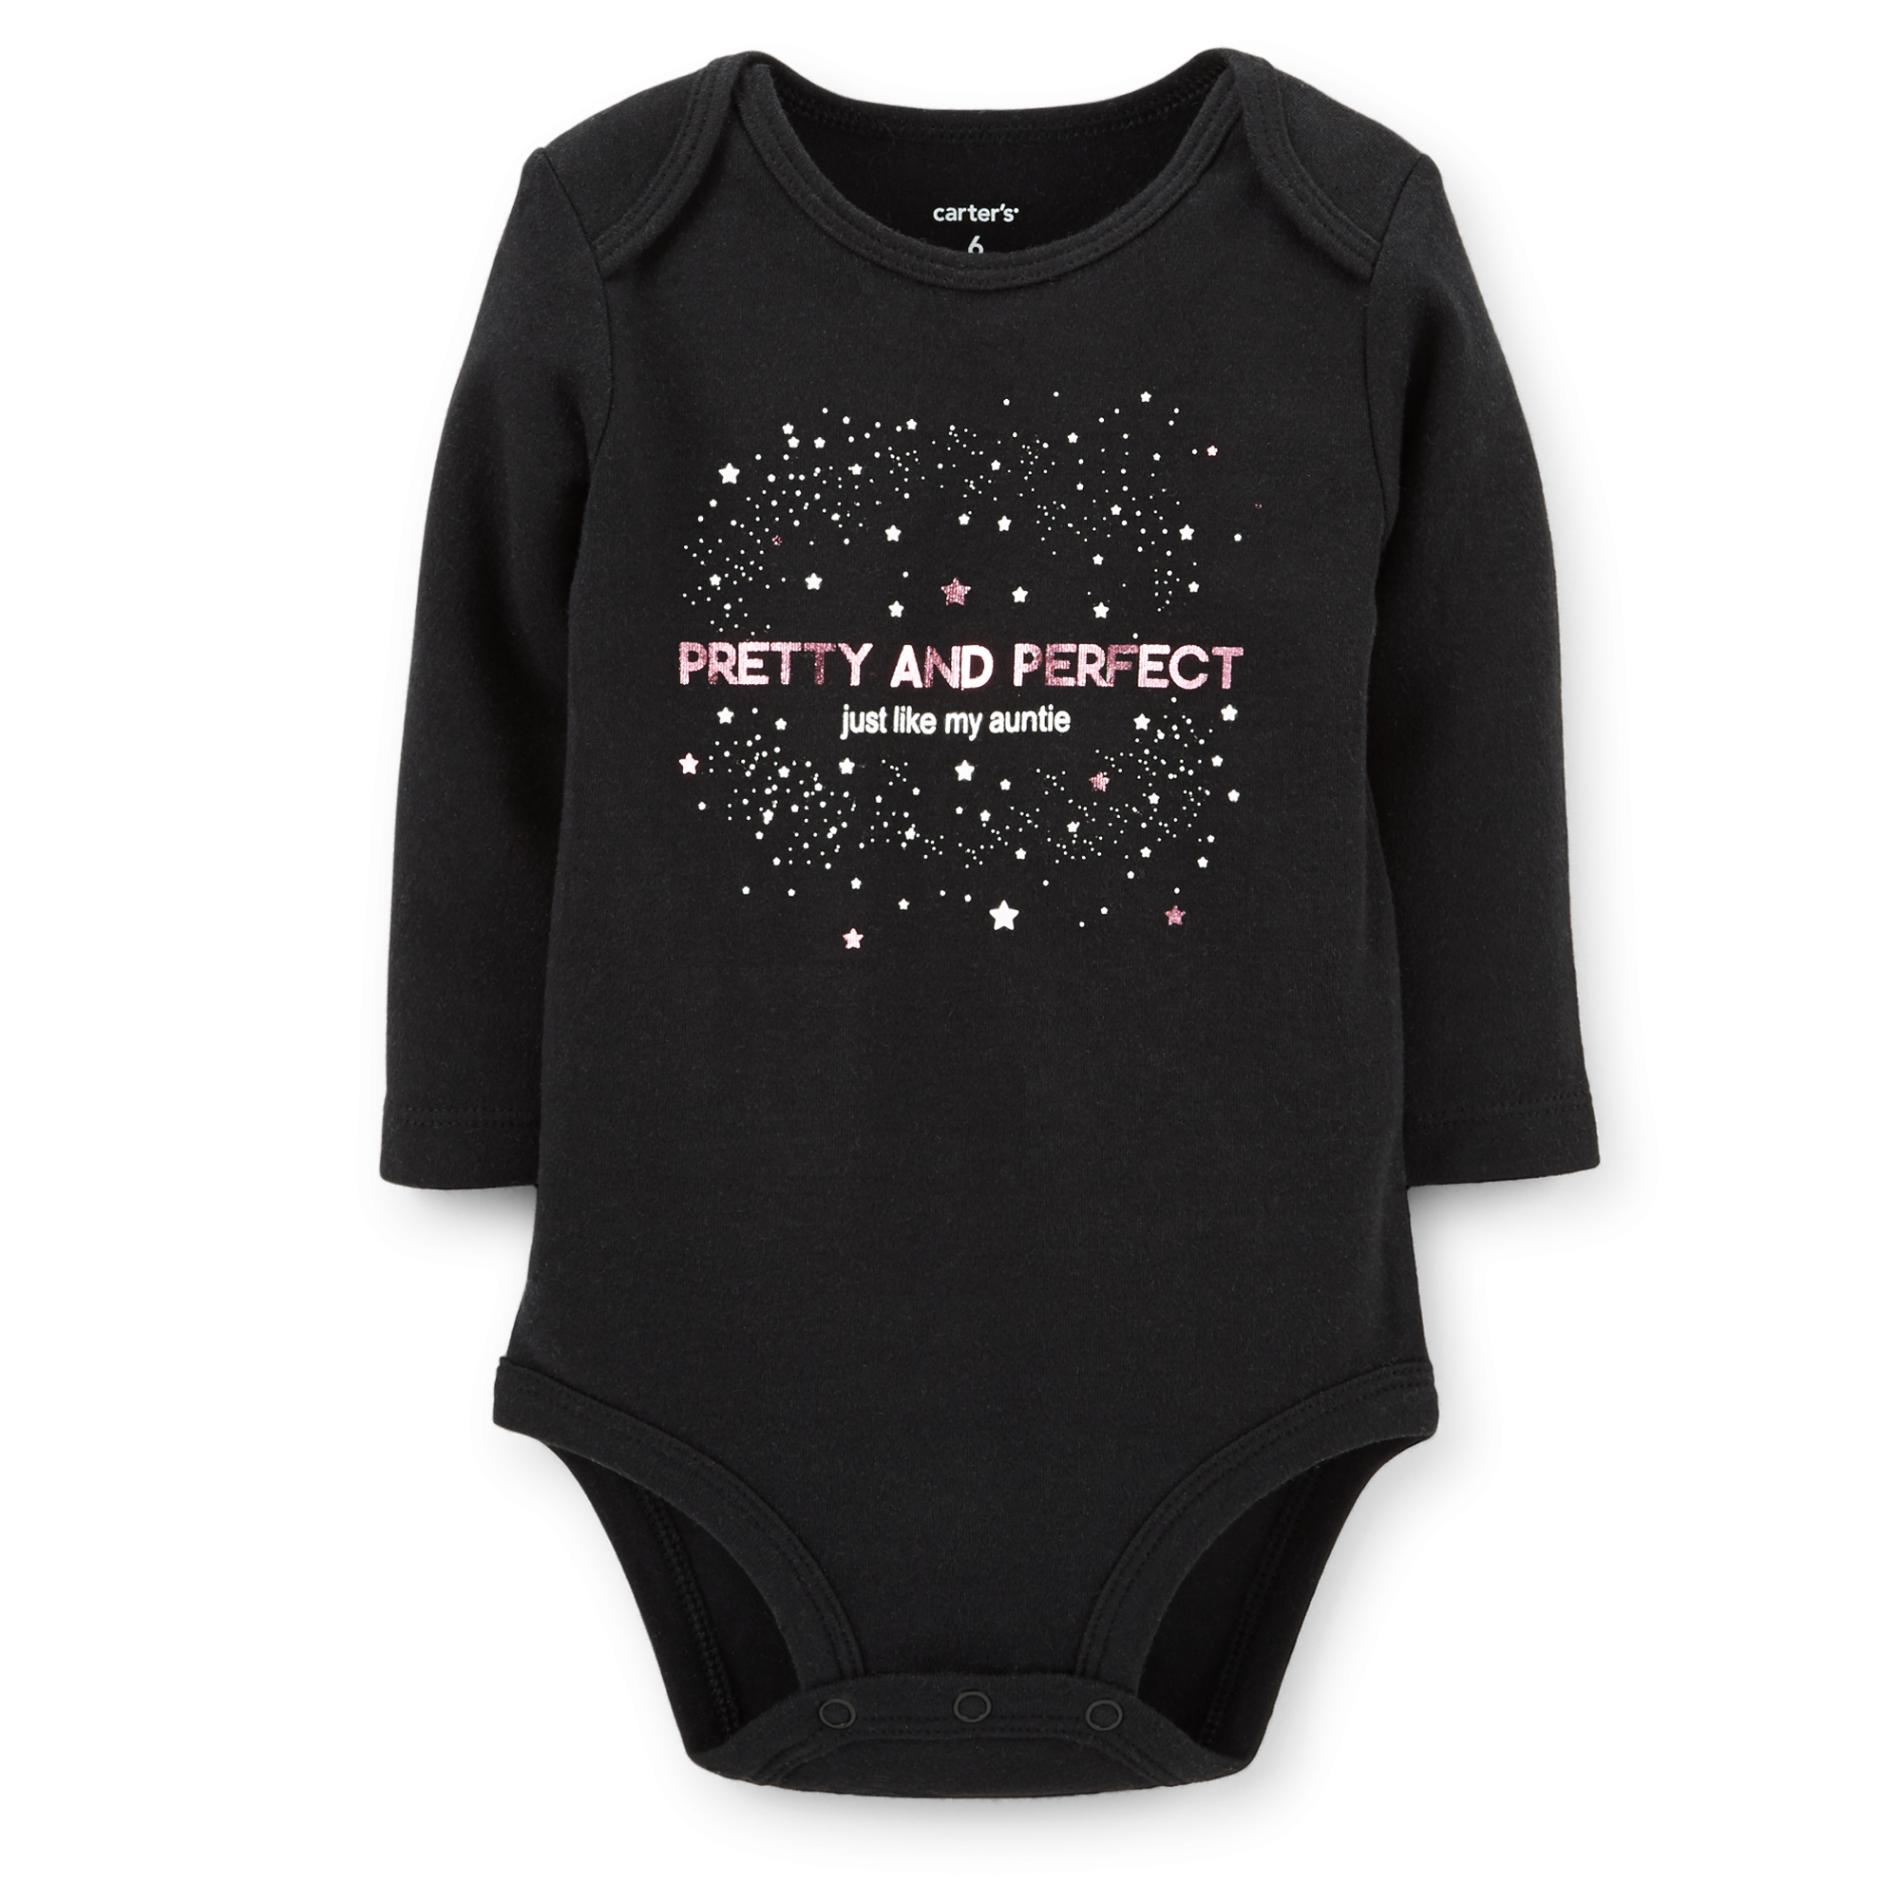 Carter's Newborn & Infant Girl's Graphic Bodysuit - Stars